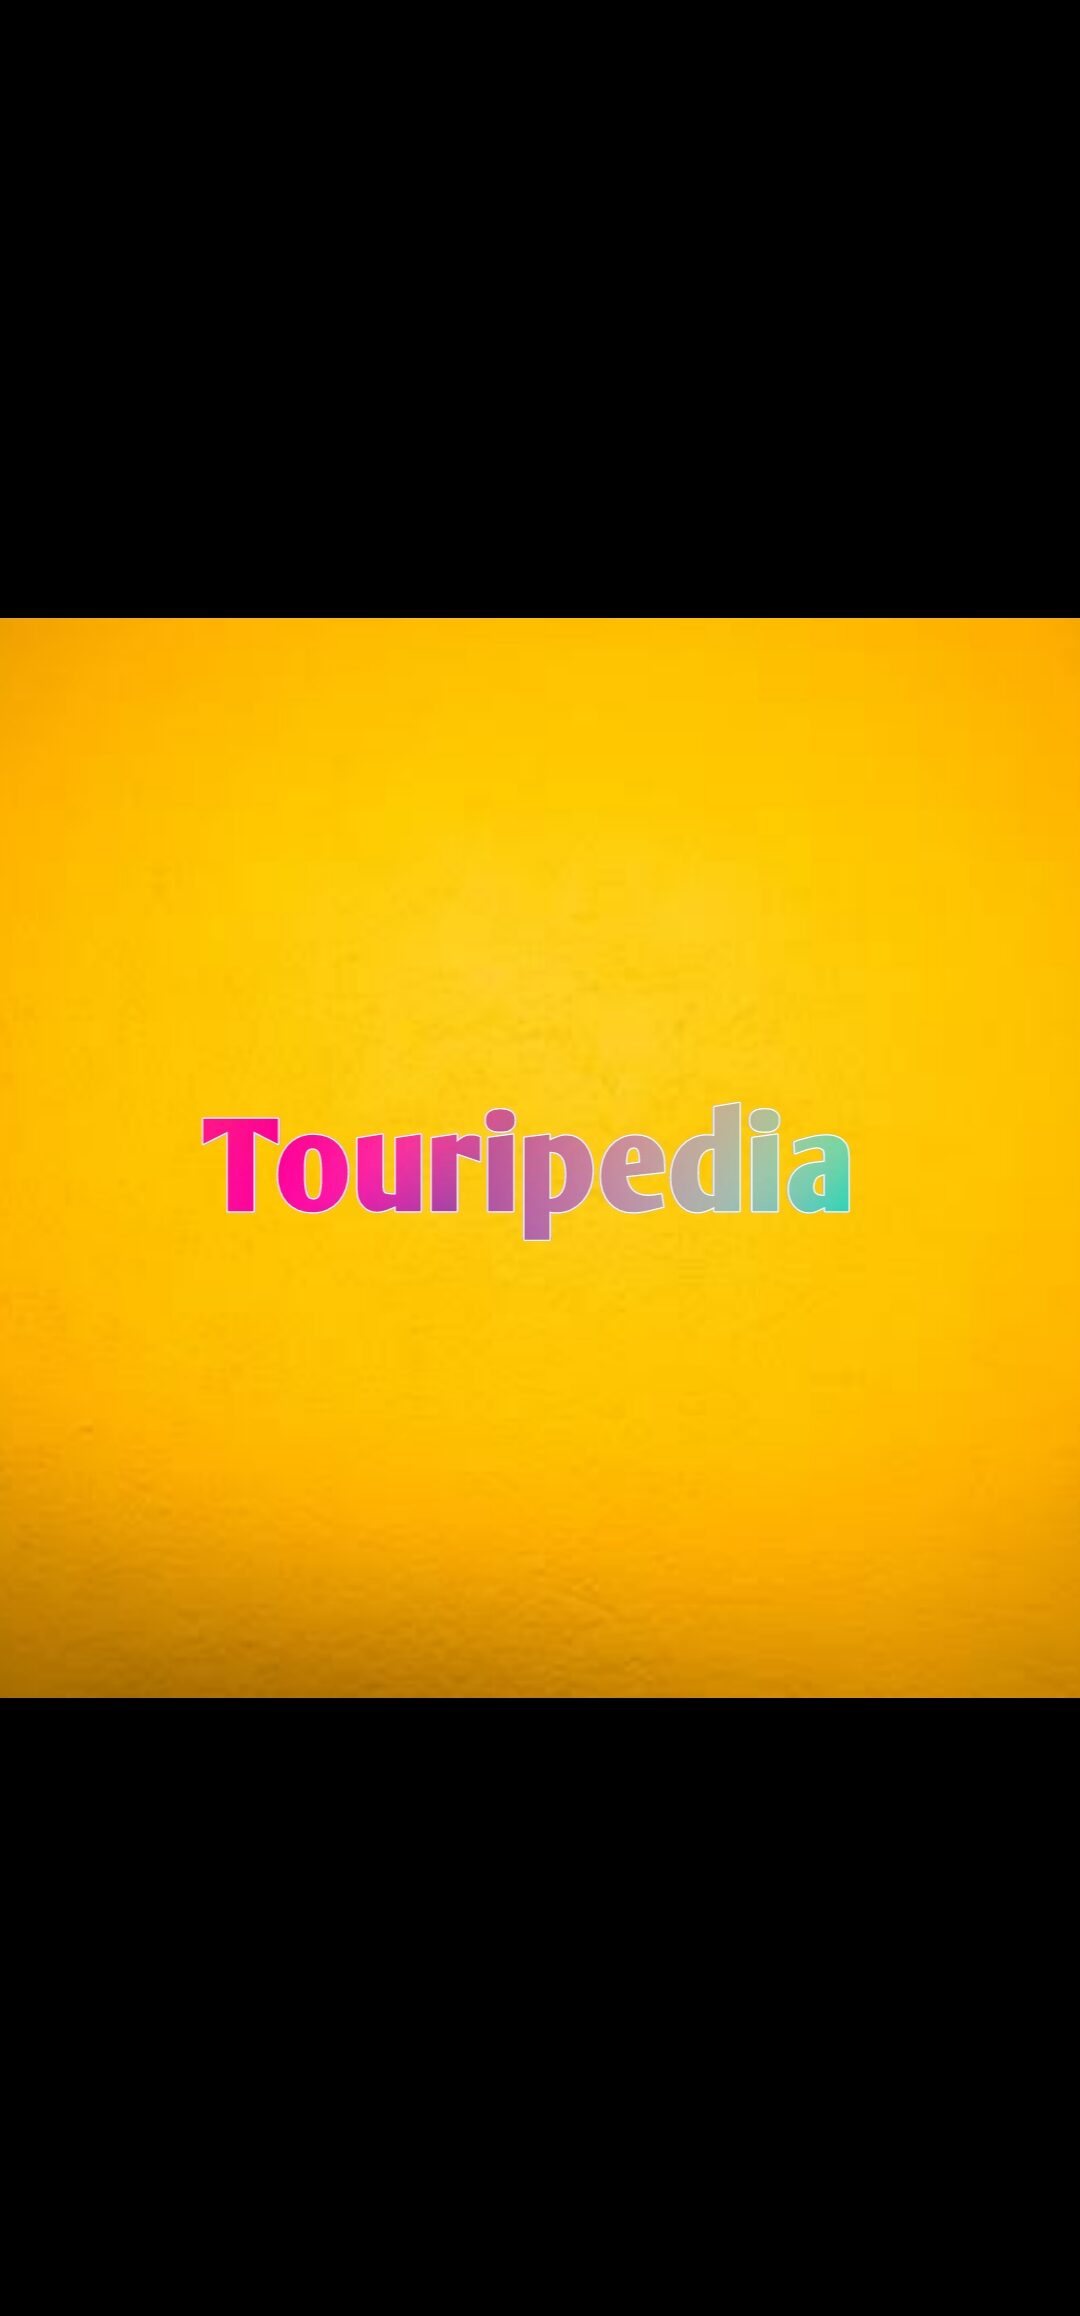 touripedia